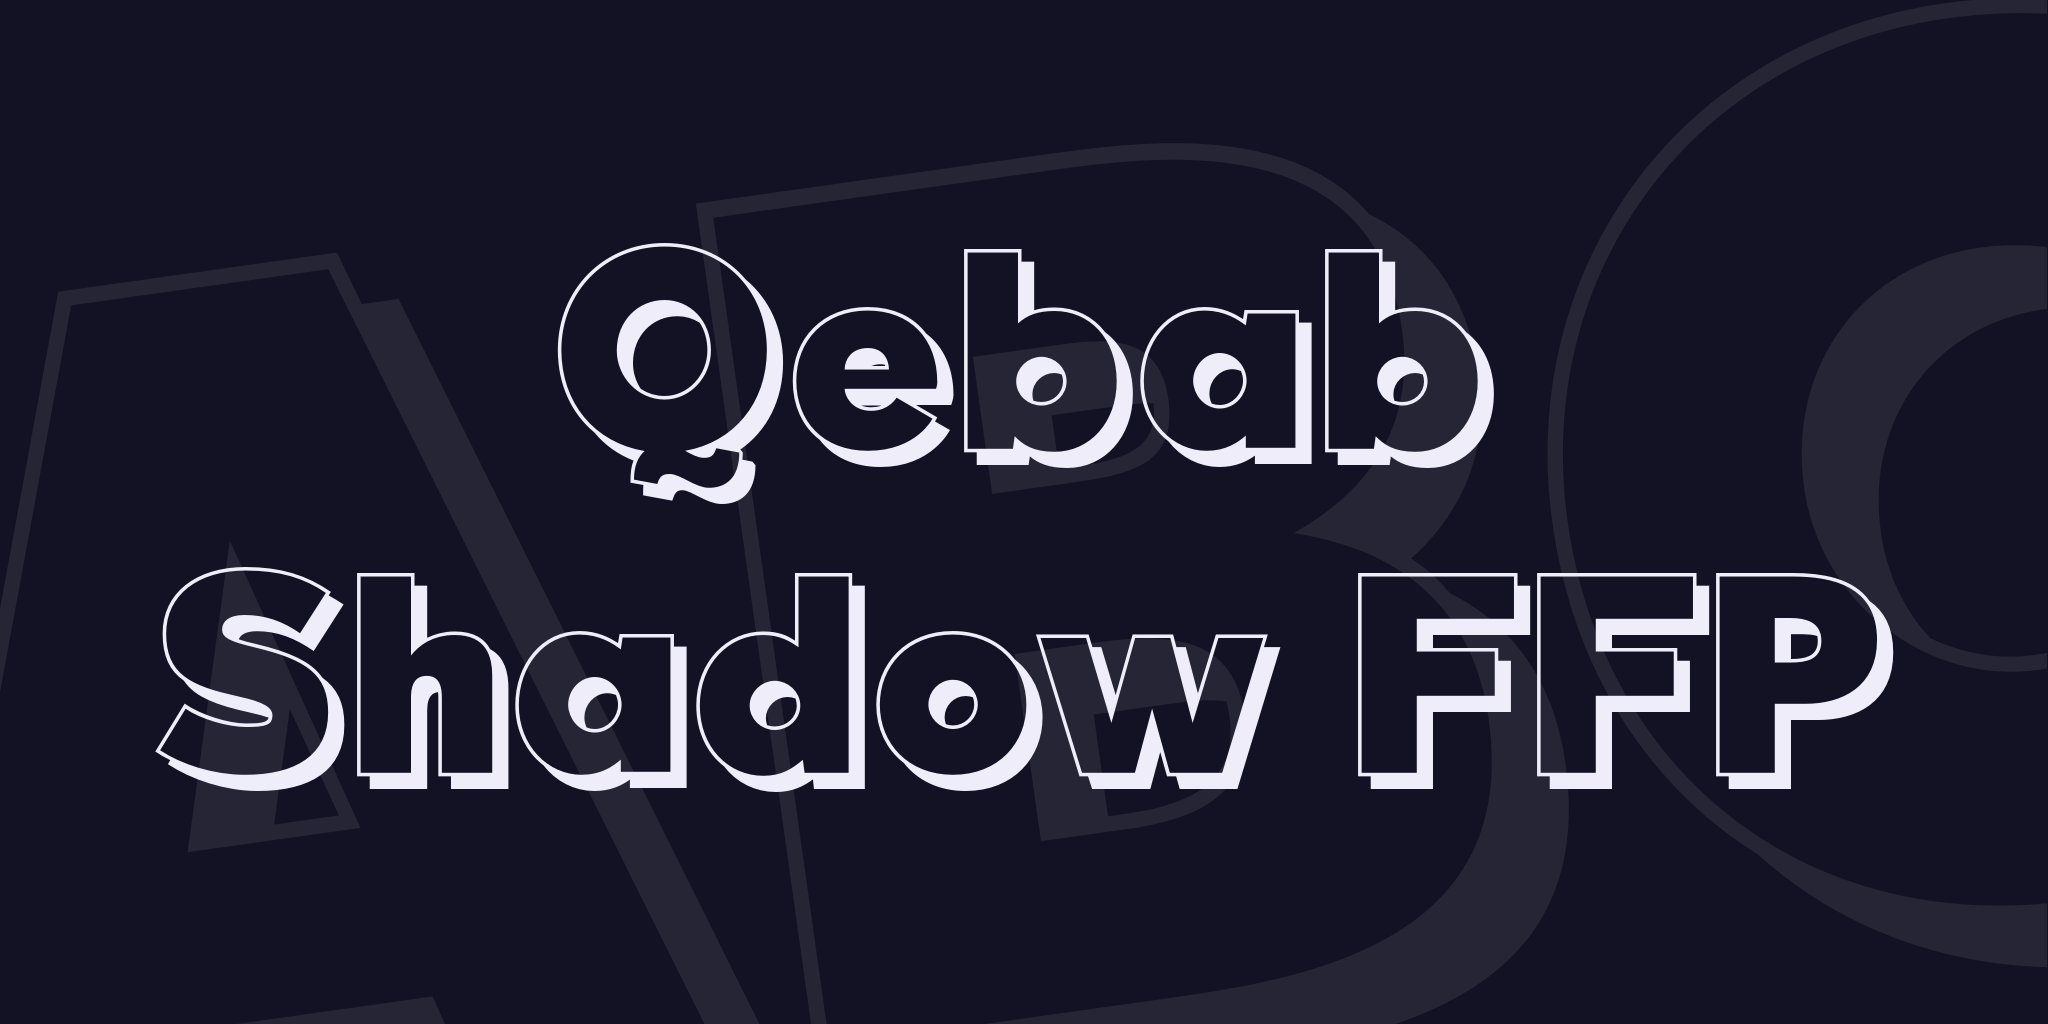 Qebab Shadow Ffp